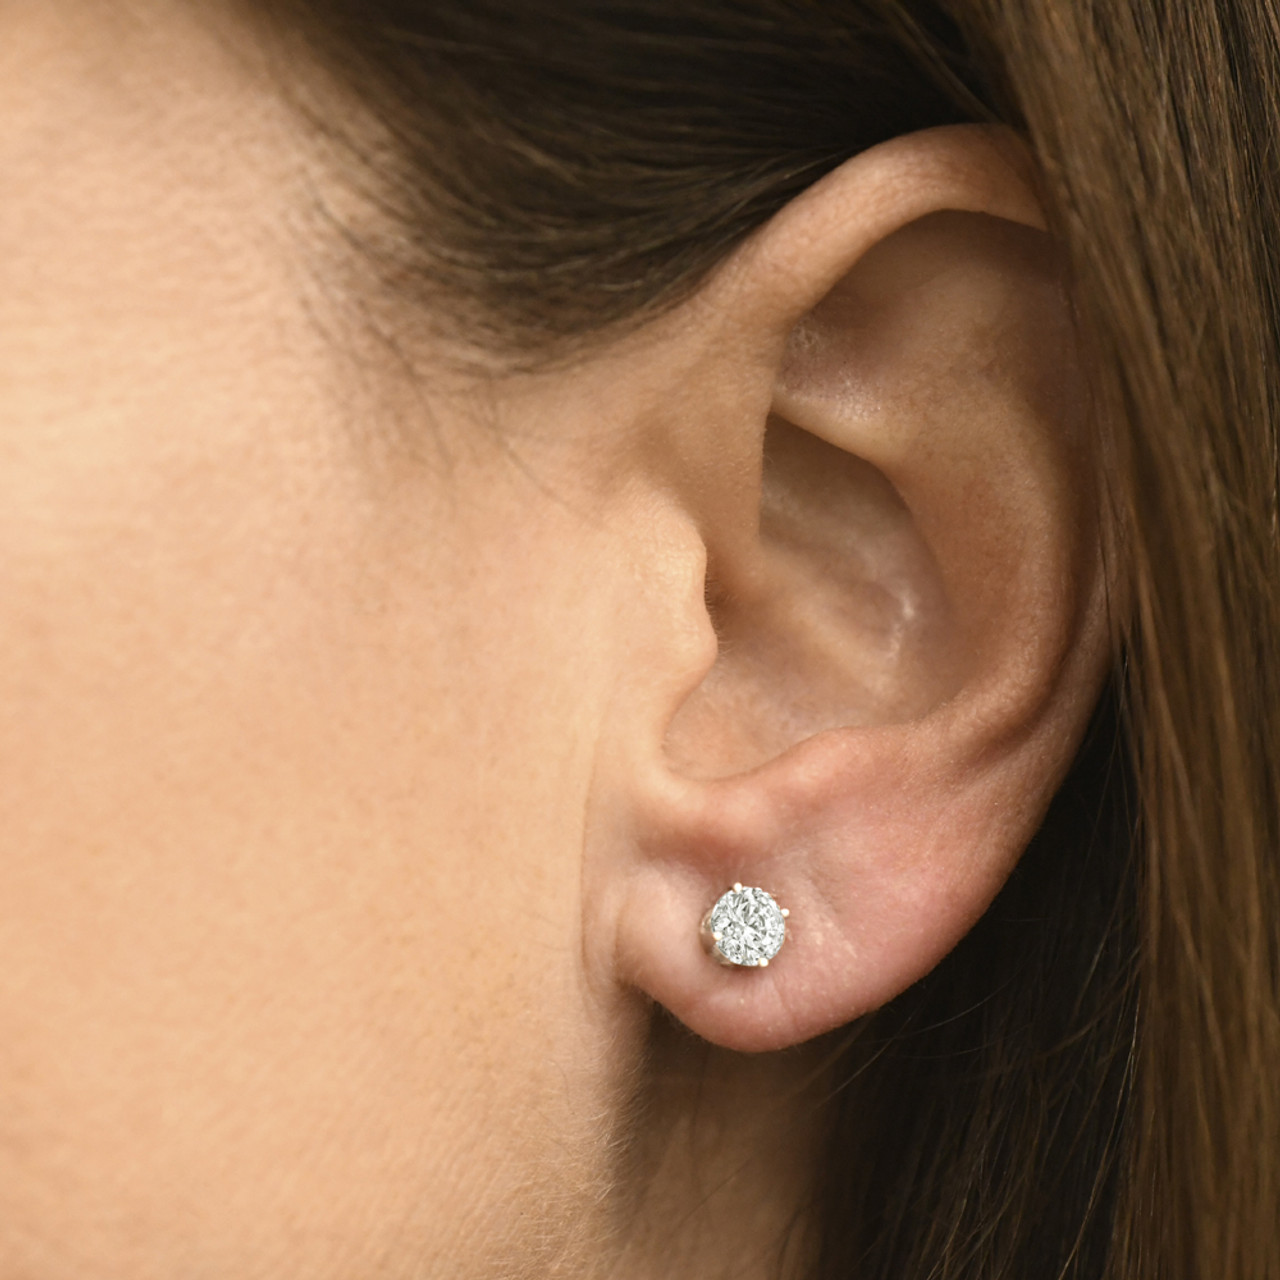 50 ct. t.w. Diamond Stud Earrings in 14kt White Gold